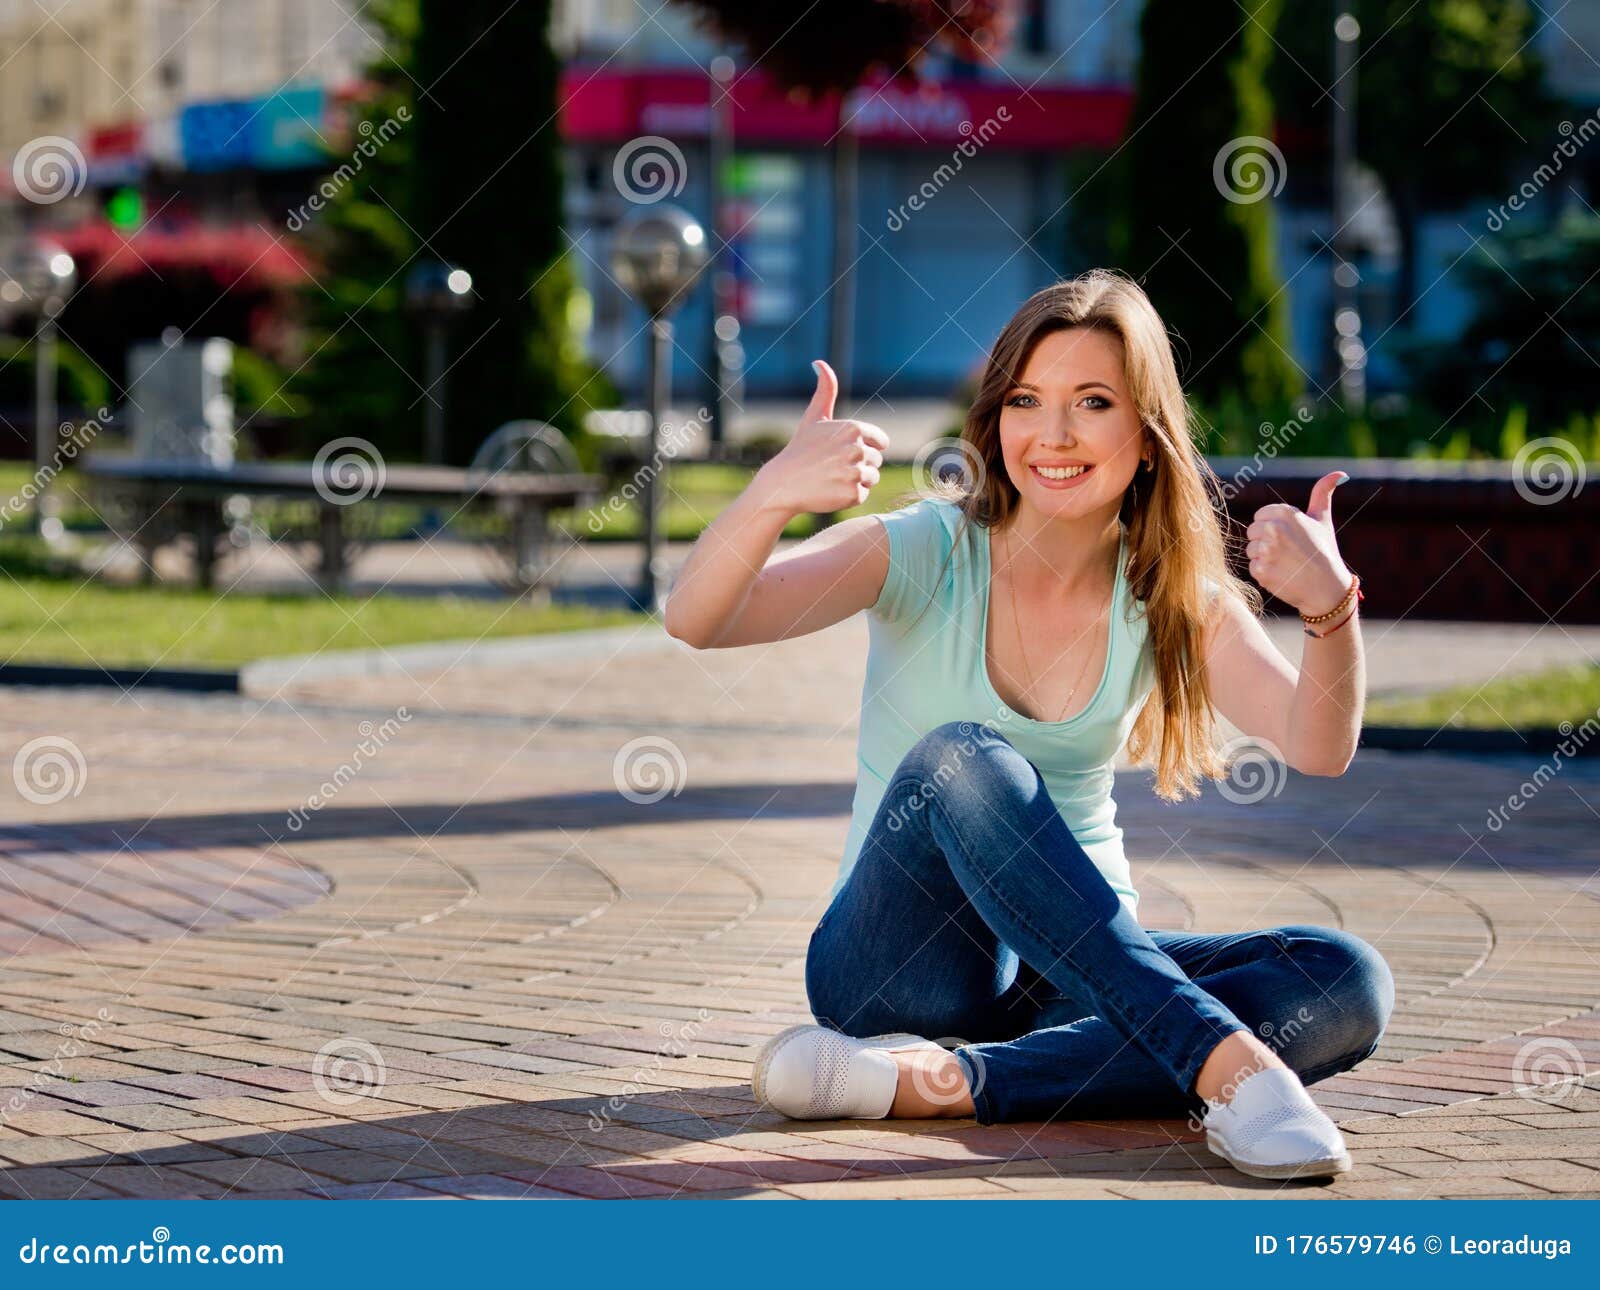 Молоденькая пришла в гости. Девушка на брусчатке фото. Девушка на тротуарной плитке. Фото где девушка сидит на тротуаре. Девочка показывает киску посреди улицы.